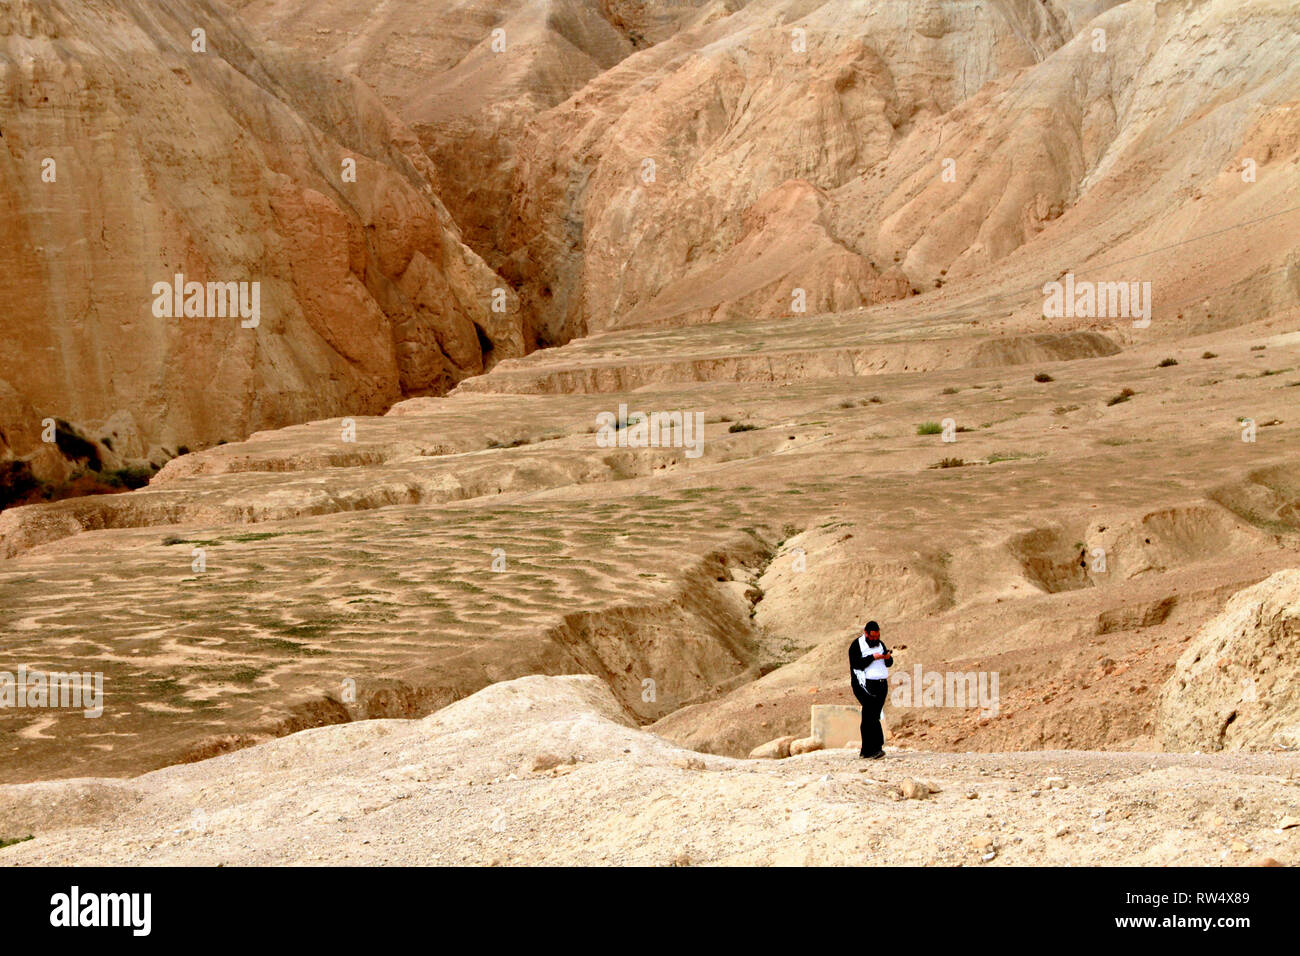 A solitary man walks a trail in barren desert hills. Stock Photo